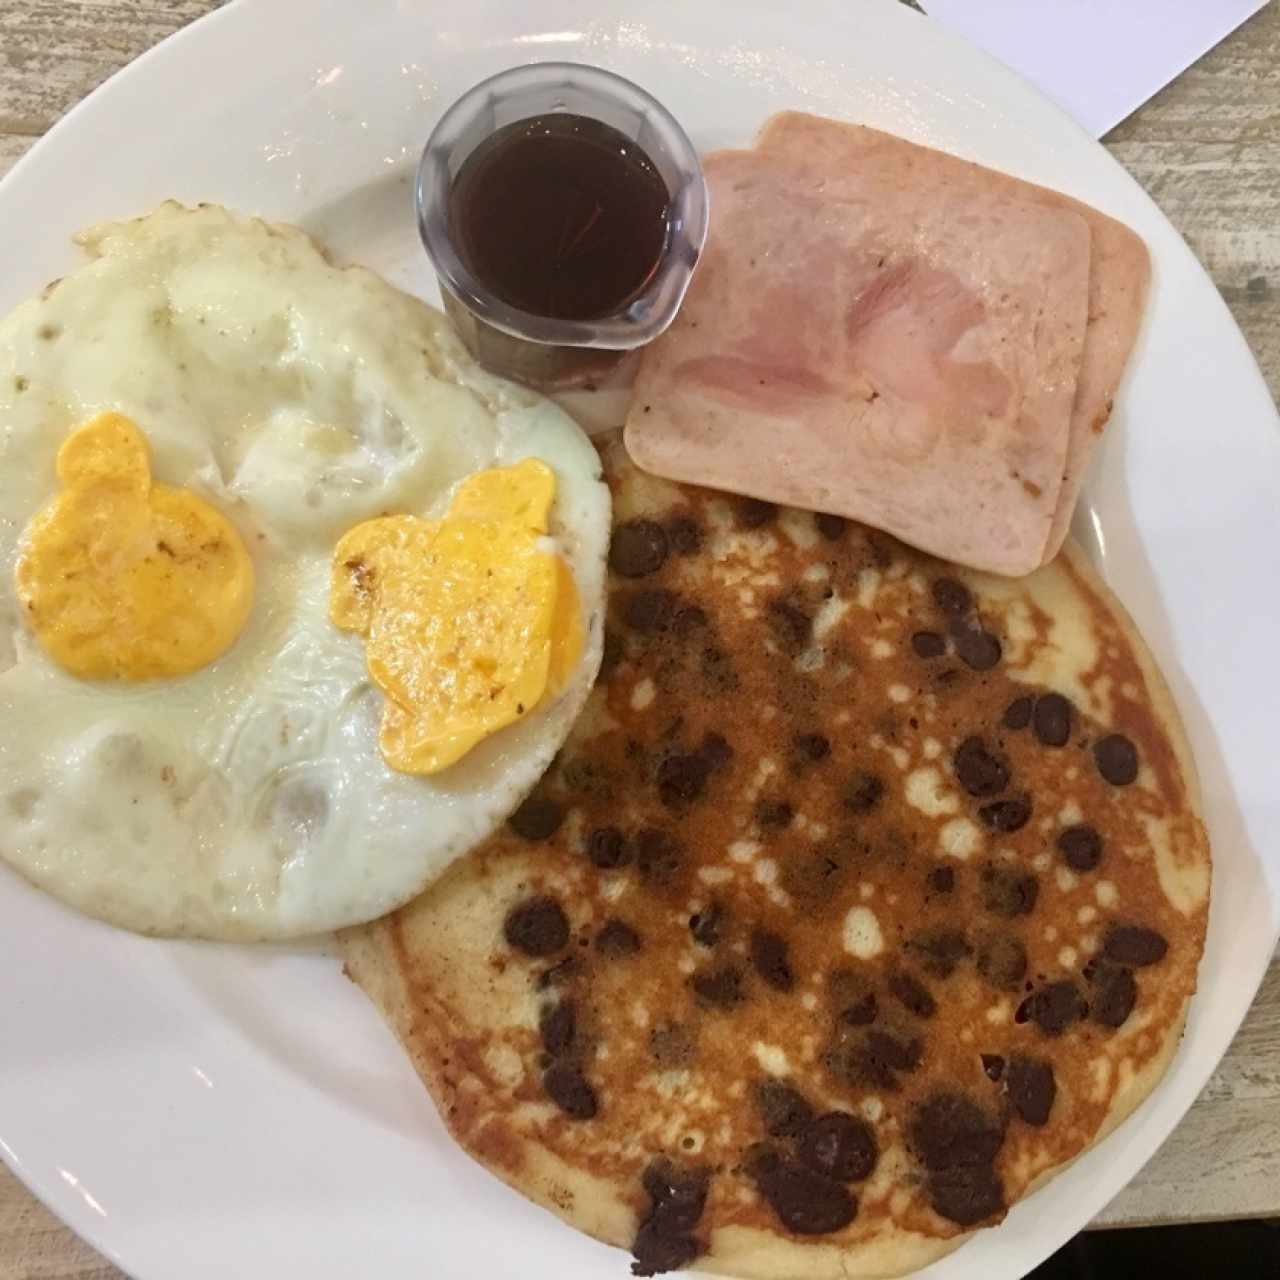 Desayuno Con To’, pancakes con chispas de chocolate y miel